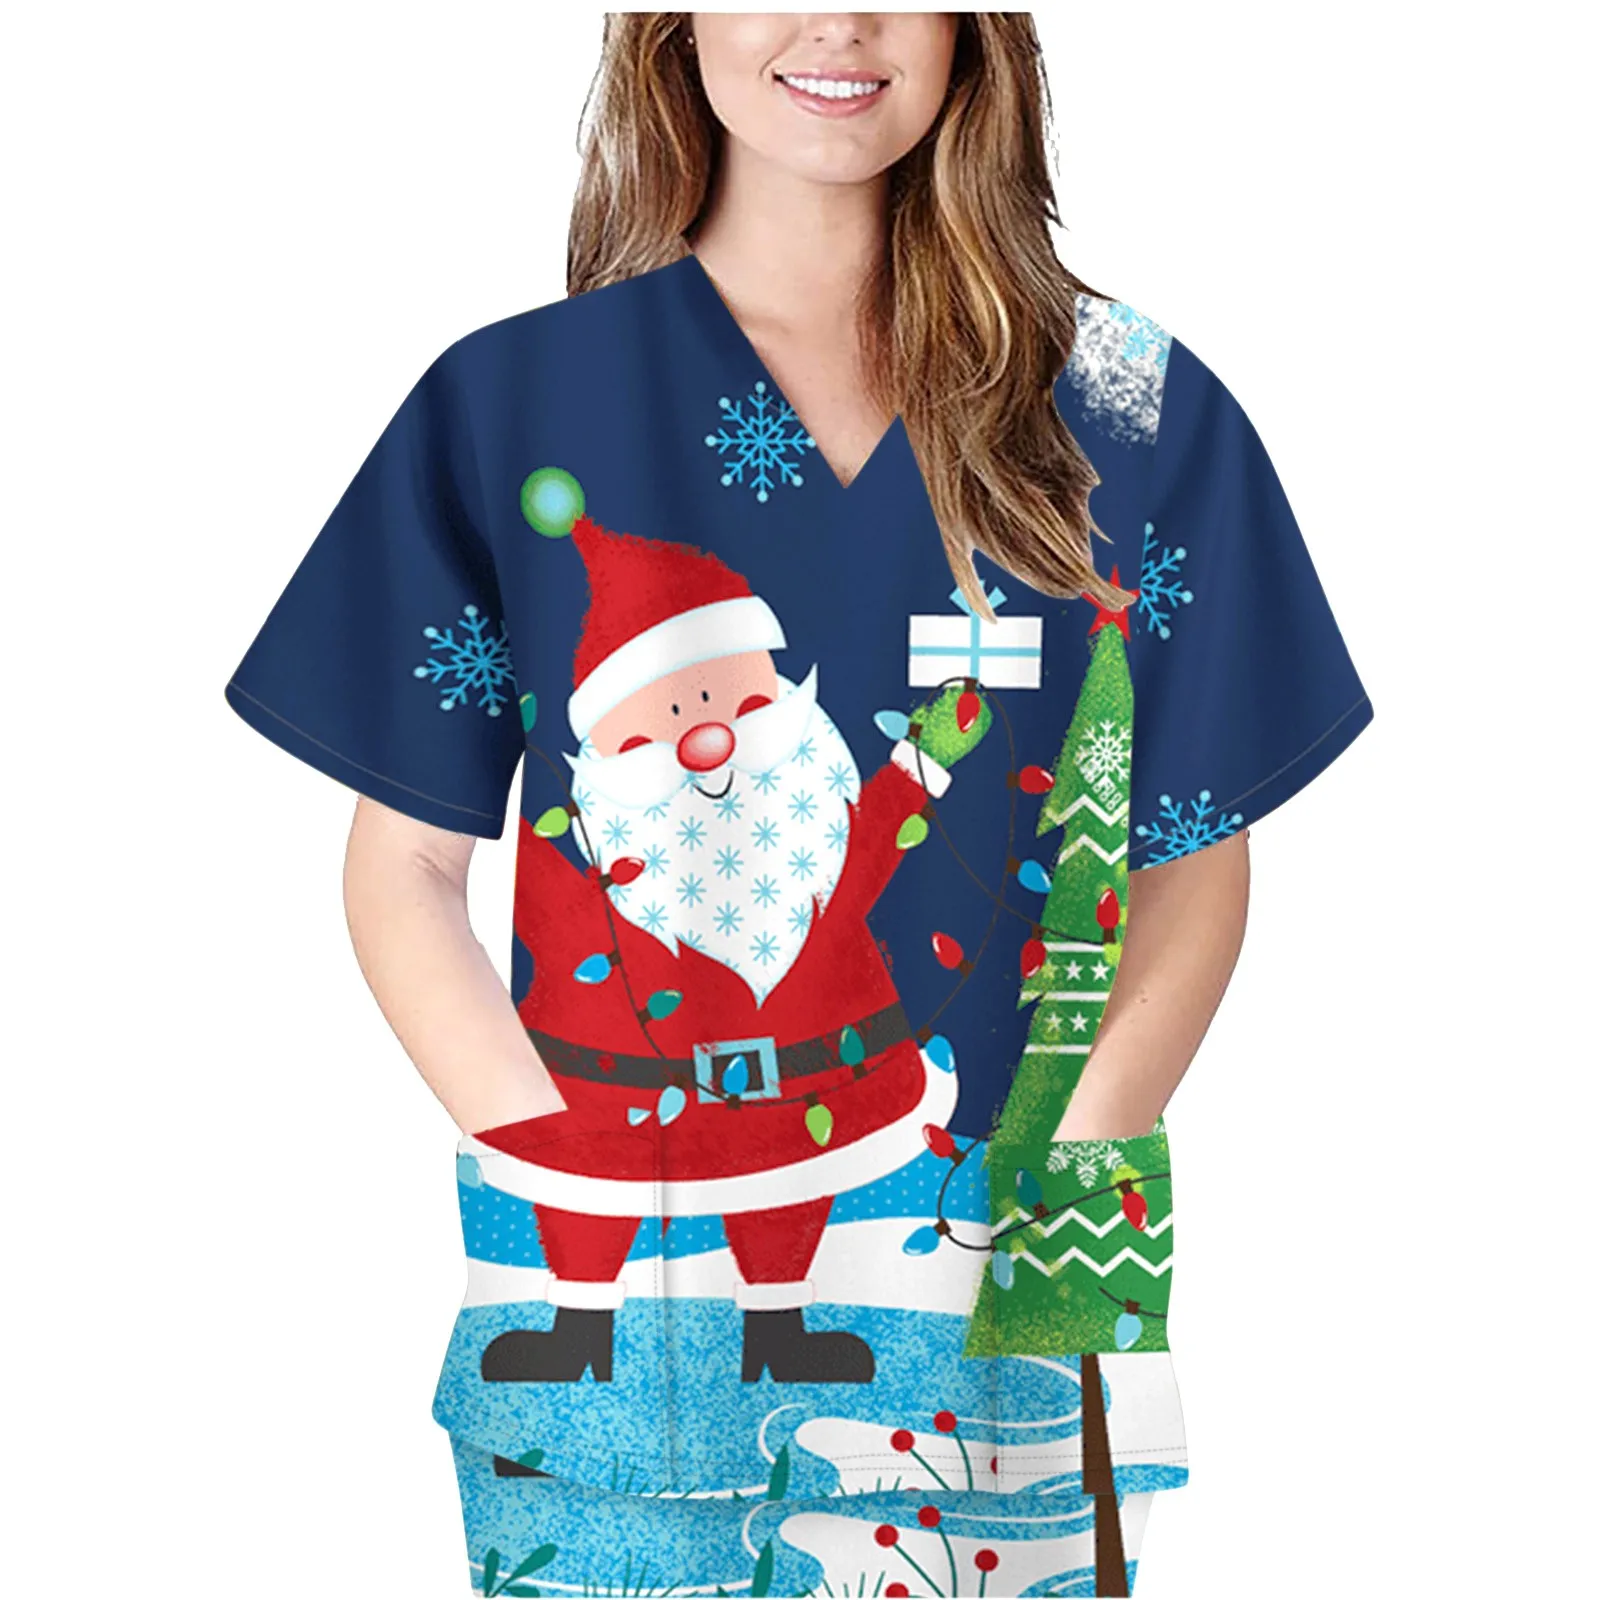 Noel baskı hemşirelik Scrubs Tops Carer T Shirt kısa kollu kadın Scrubs üniformaları hemşire v yaka cep üniforma elbise